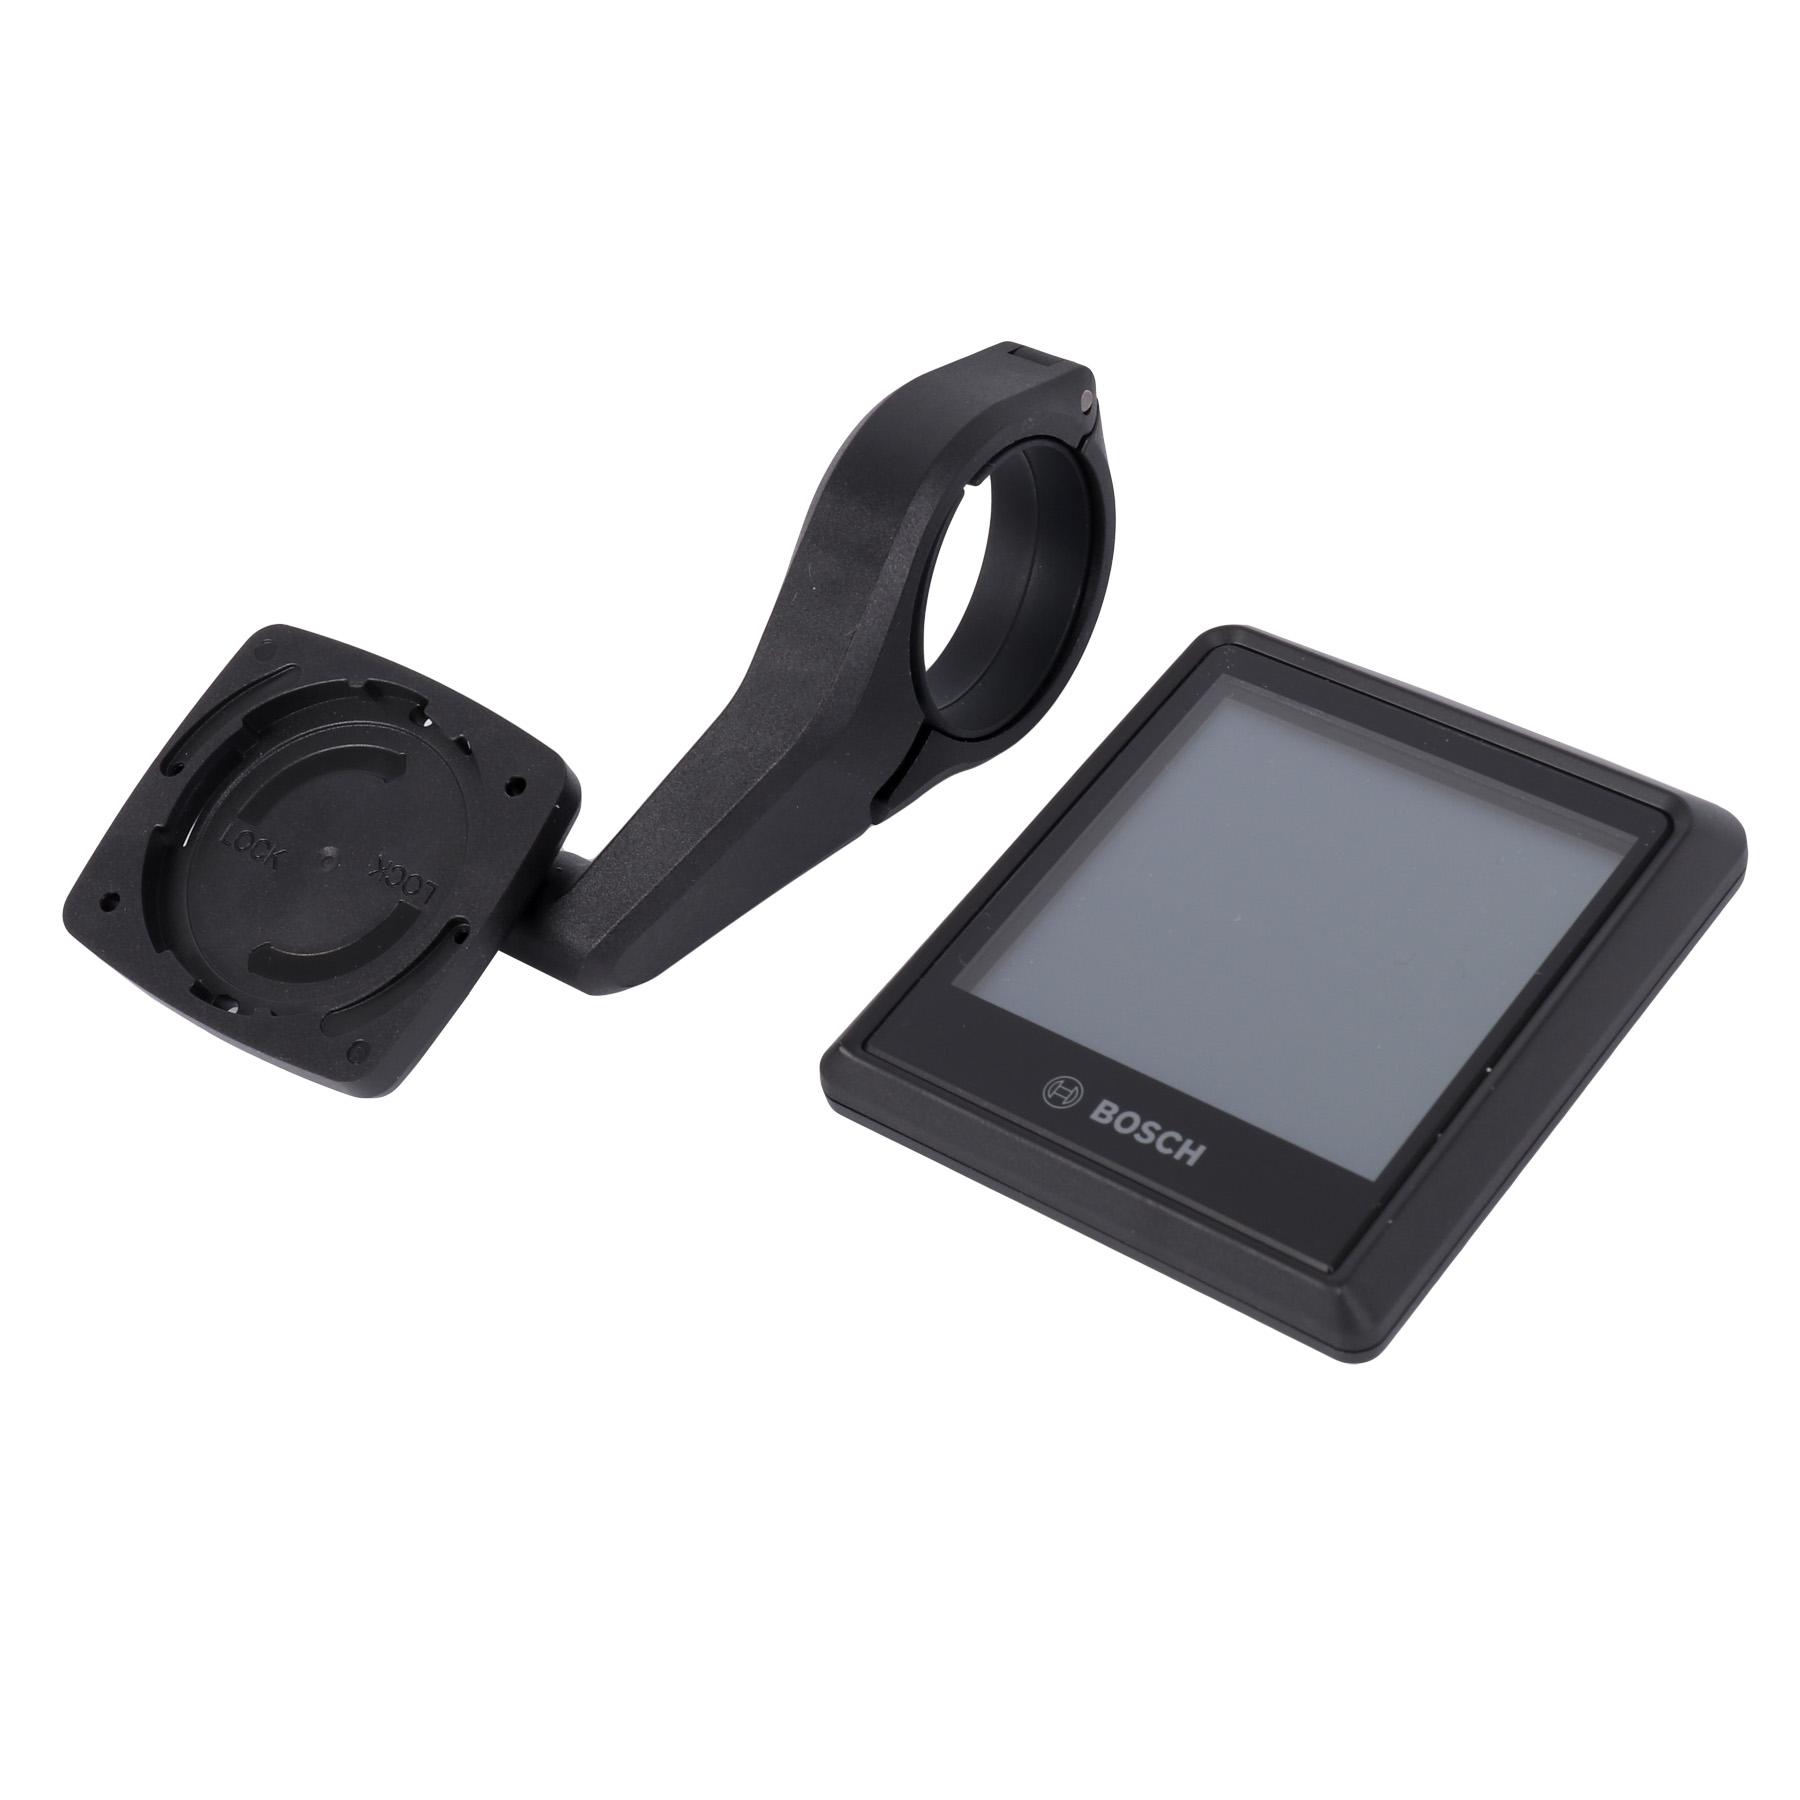 Produktbild von Bosch Intuvia 100 Display Nachrüst-Kit | The Smart System | BHU3200 | 31.8mm